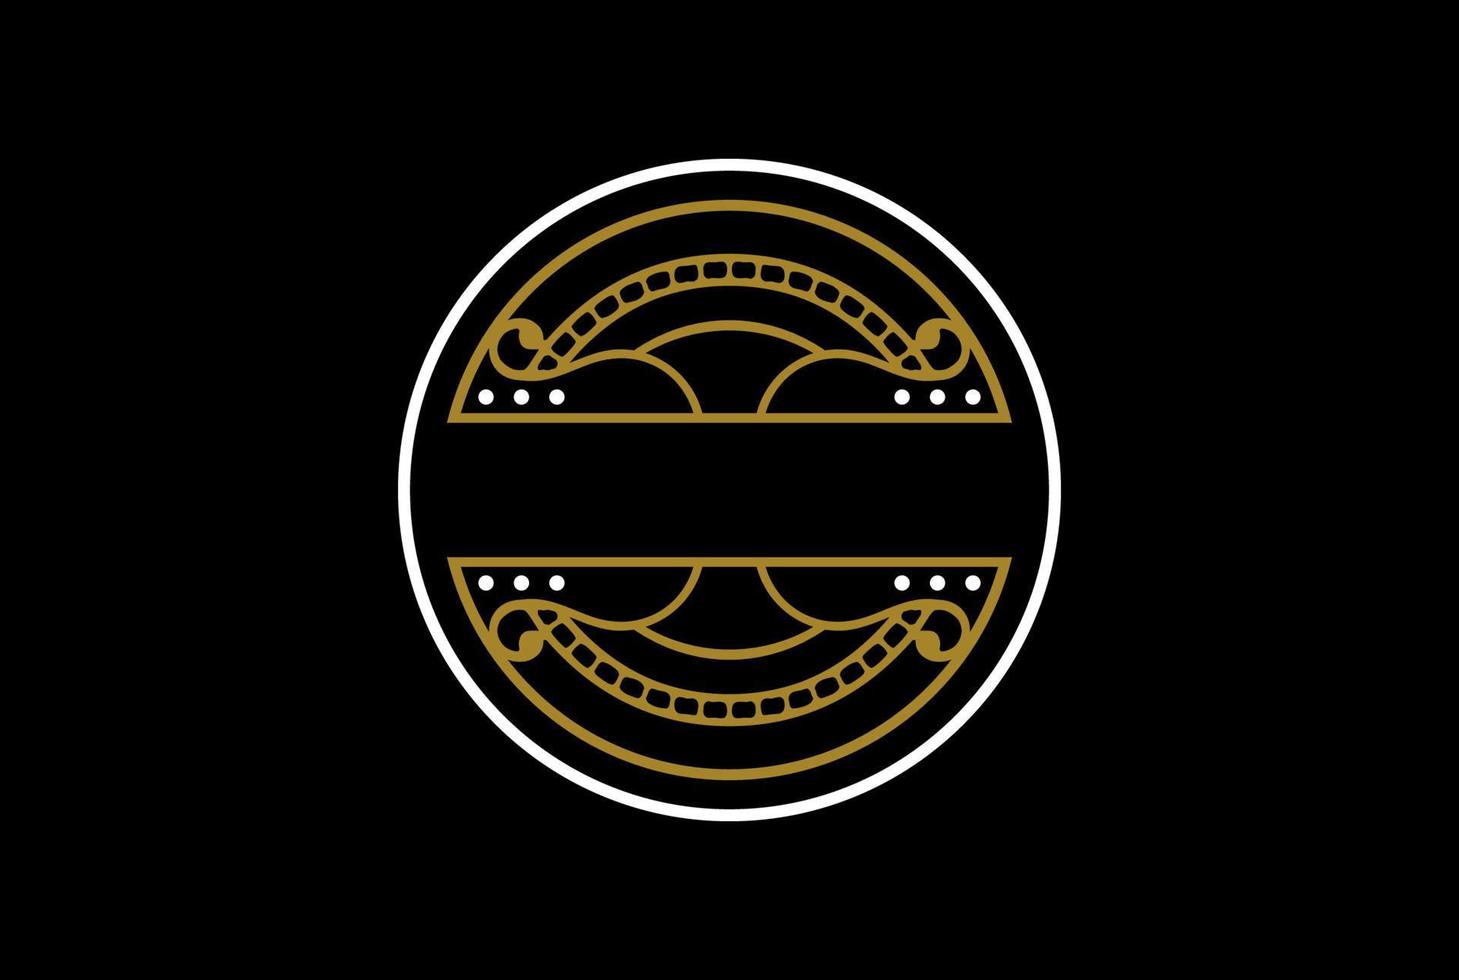 vintage retrò distintivo emblema etichetta adesivo timbro sigillo logo design vettoriale